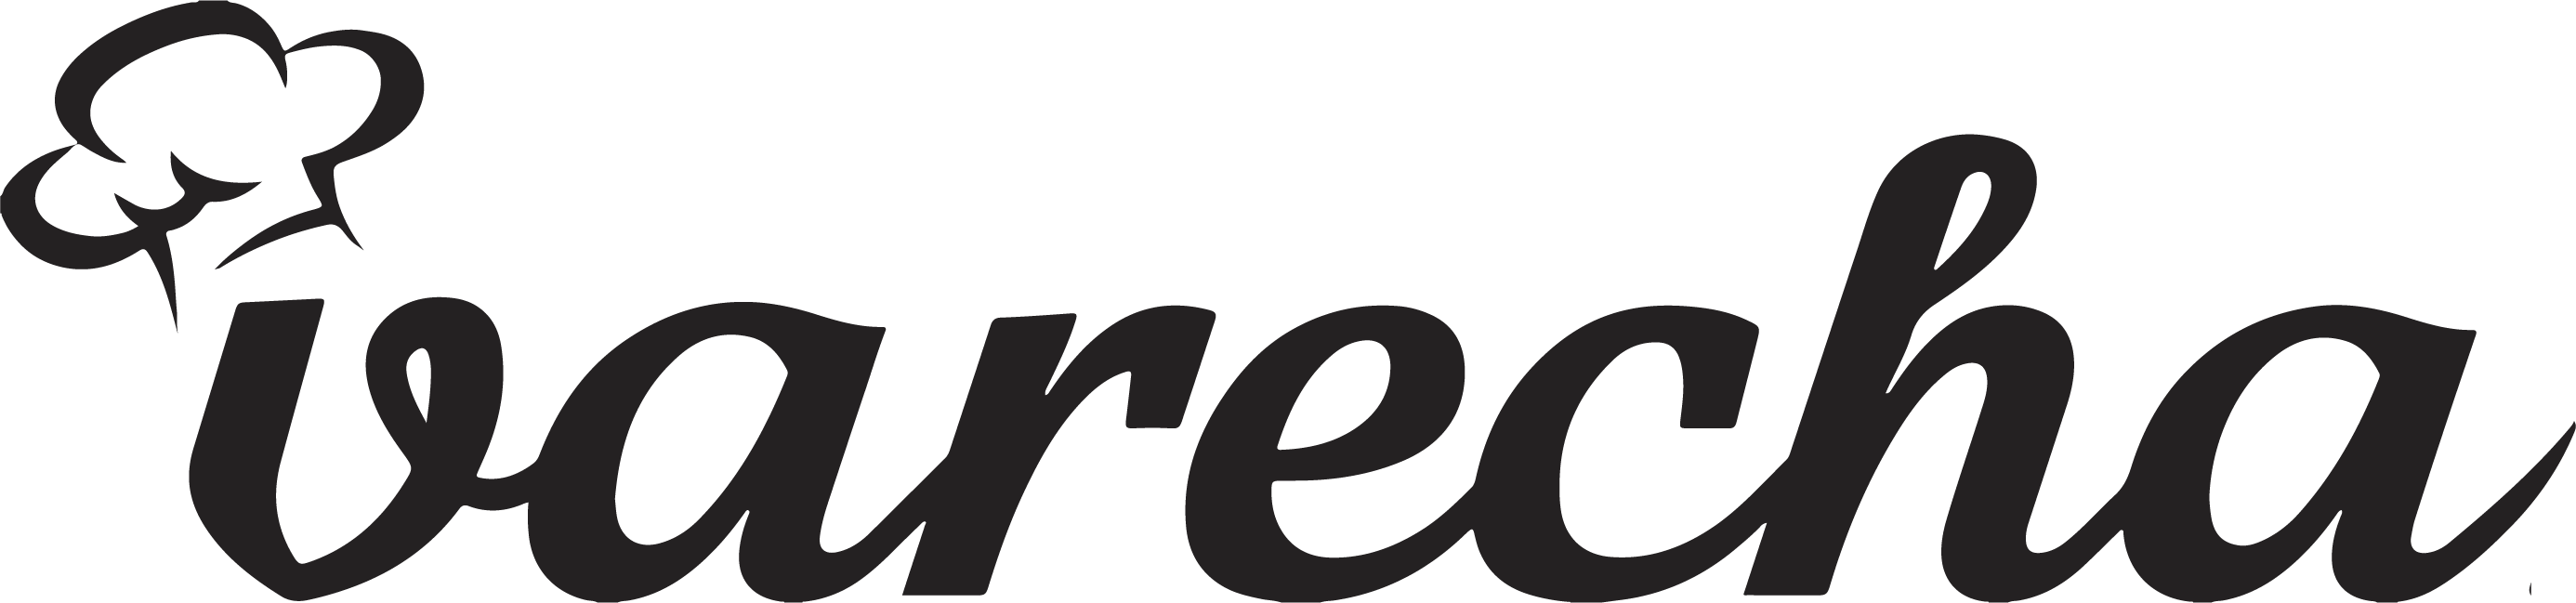 Varecha Logo čierne jednofarebné